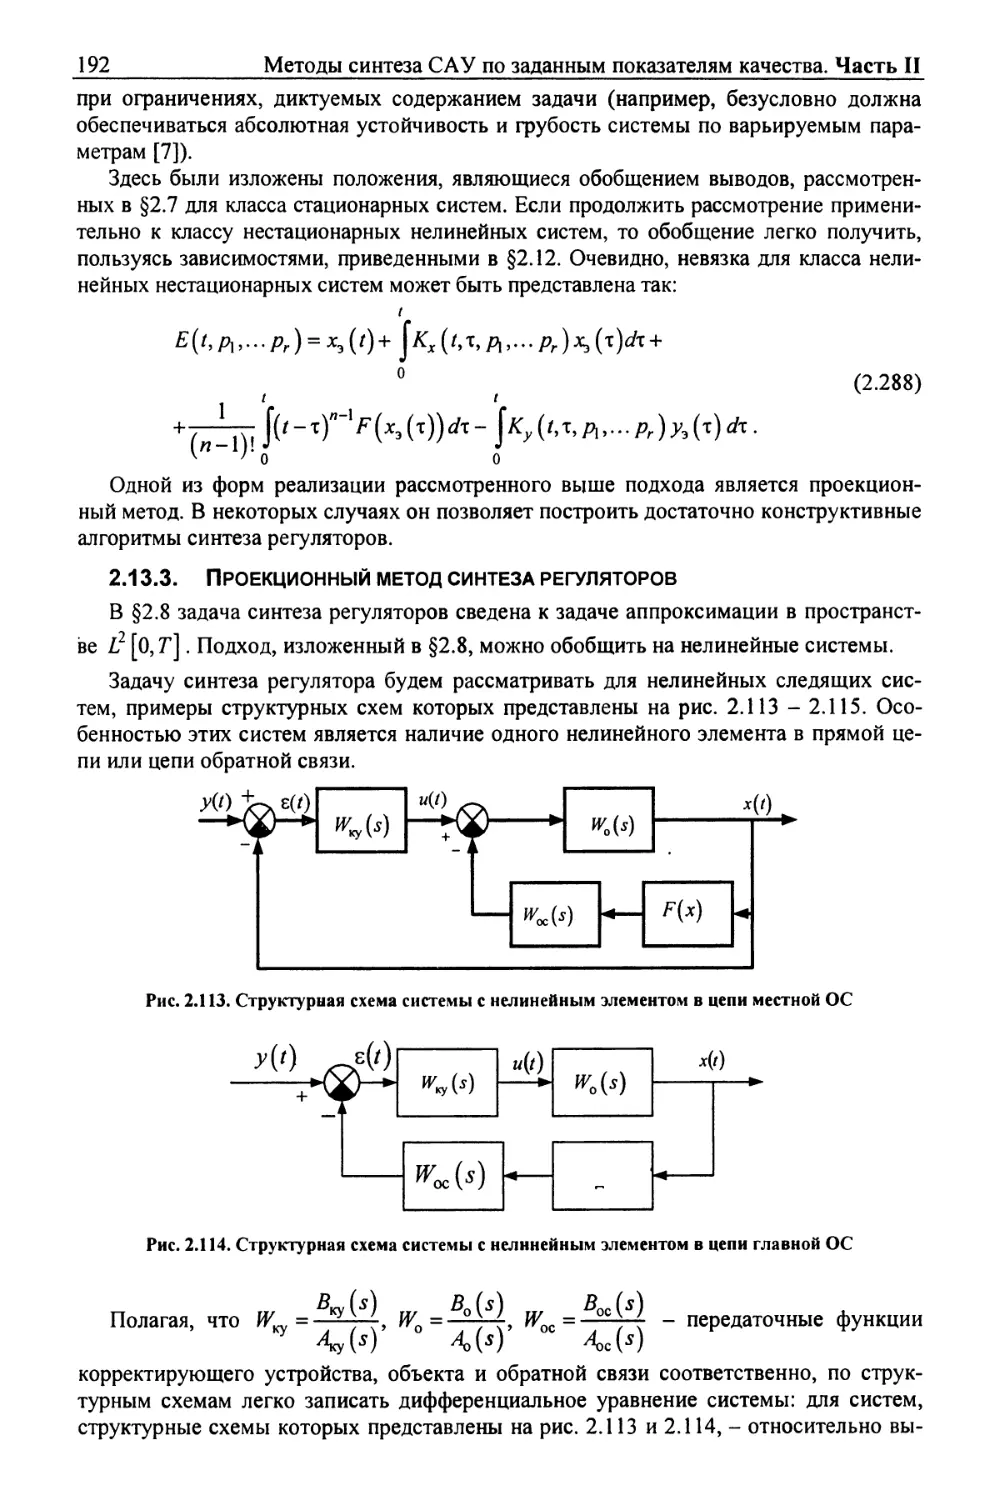 2.13.3. Проекционный метод синтеза регуляторов